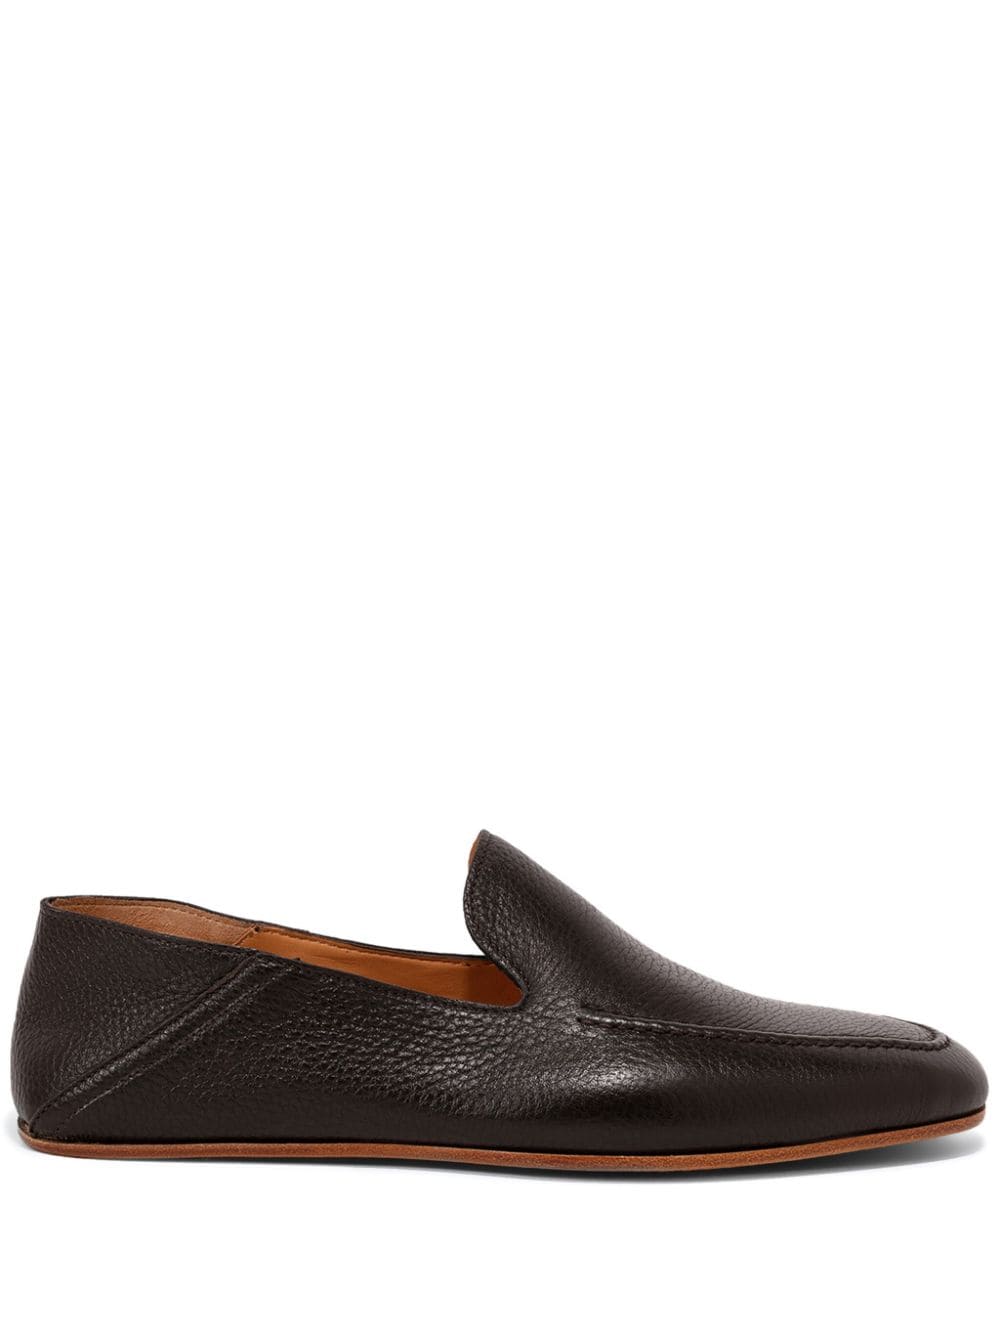 Magnanni Heston leather loafers - Brown von Magnanni